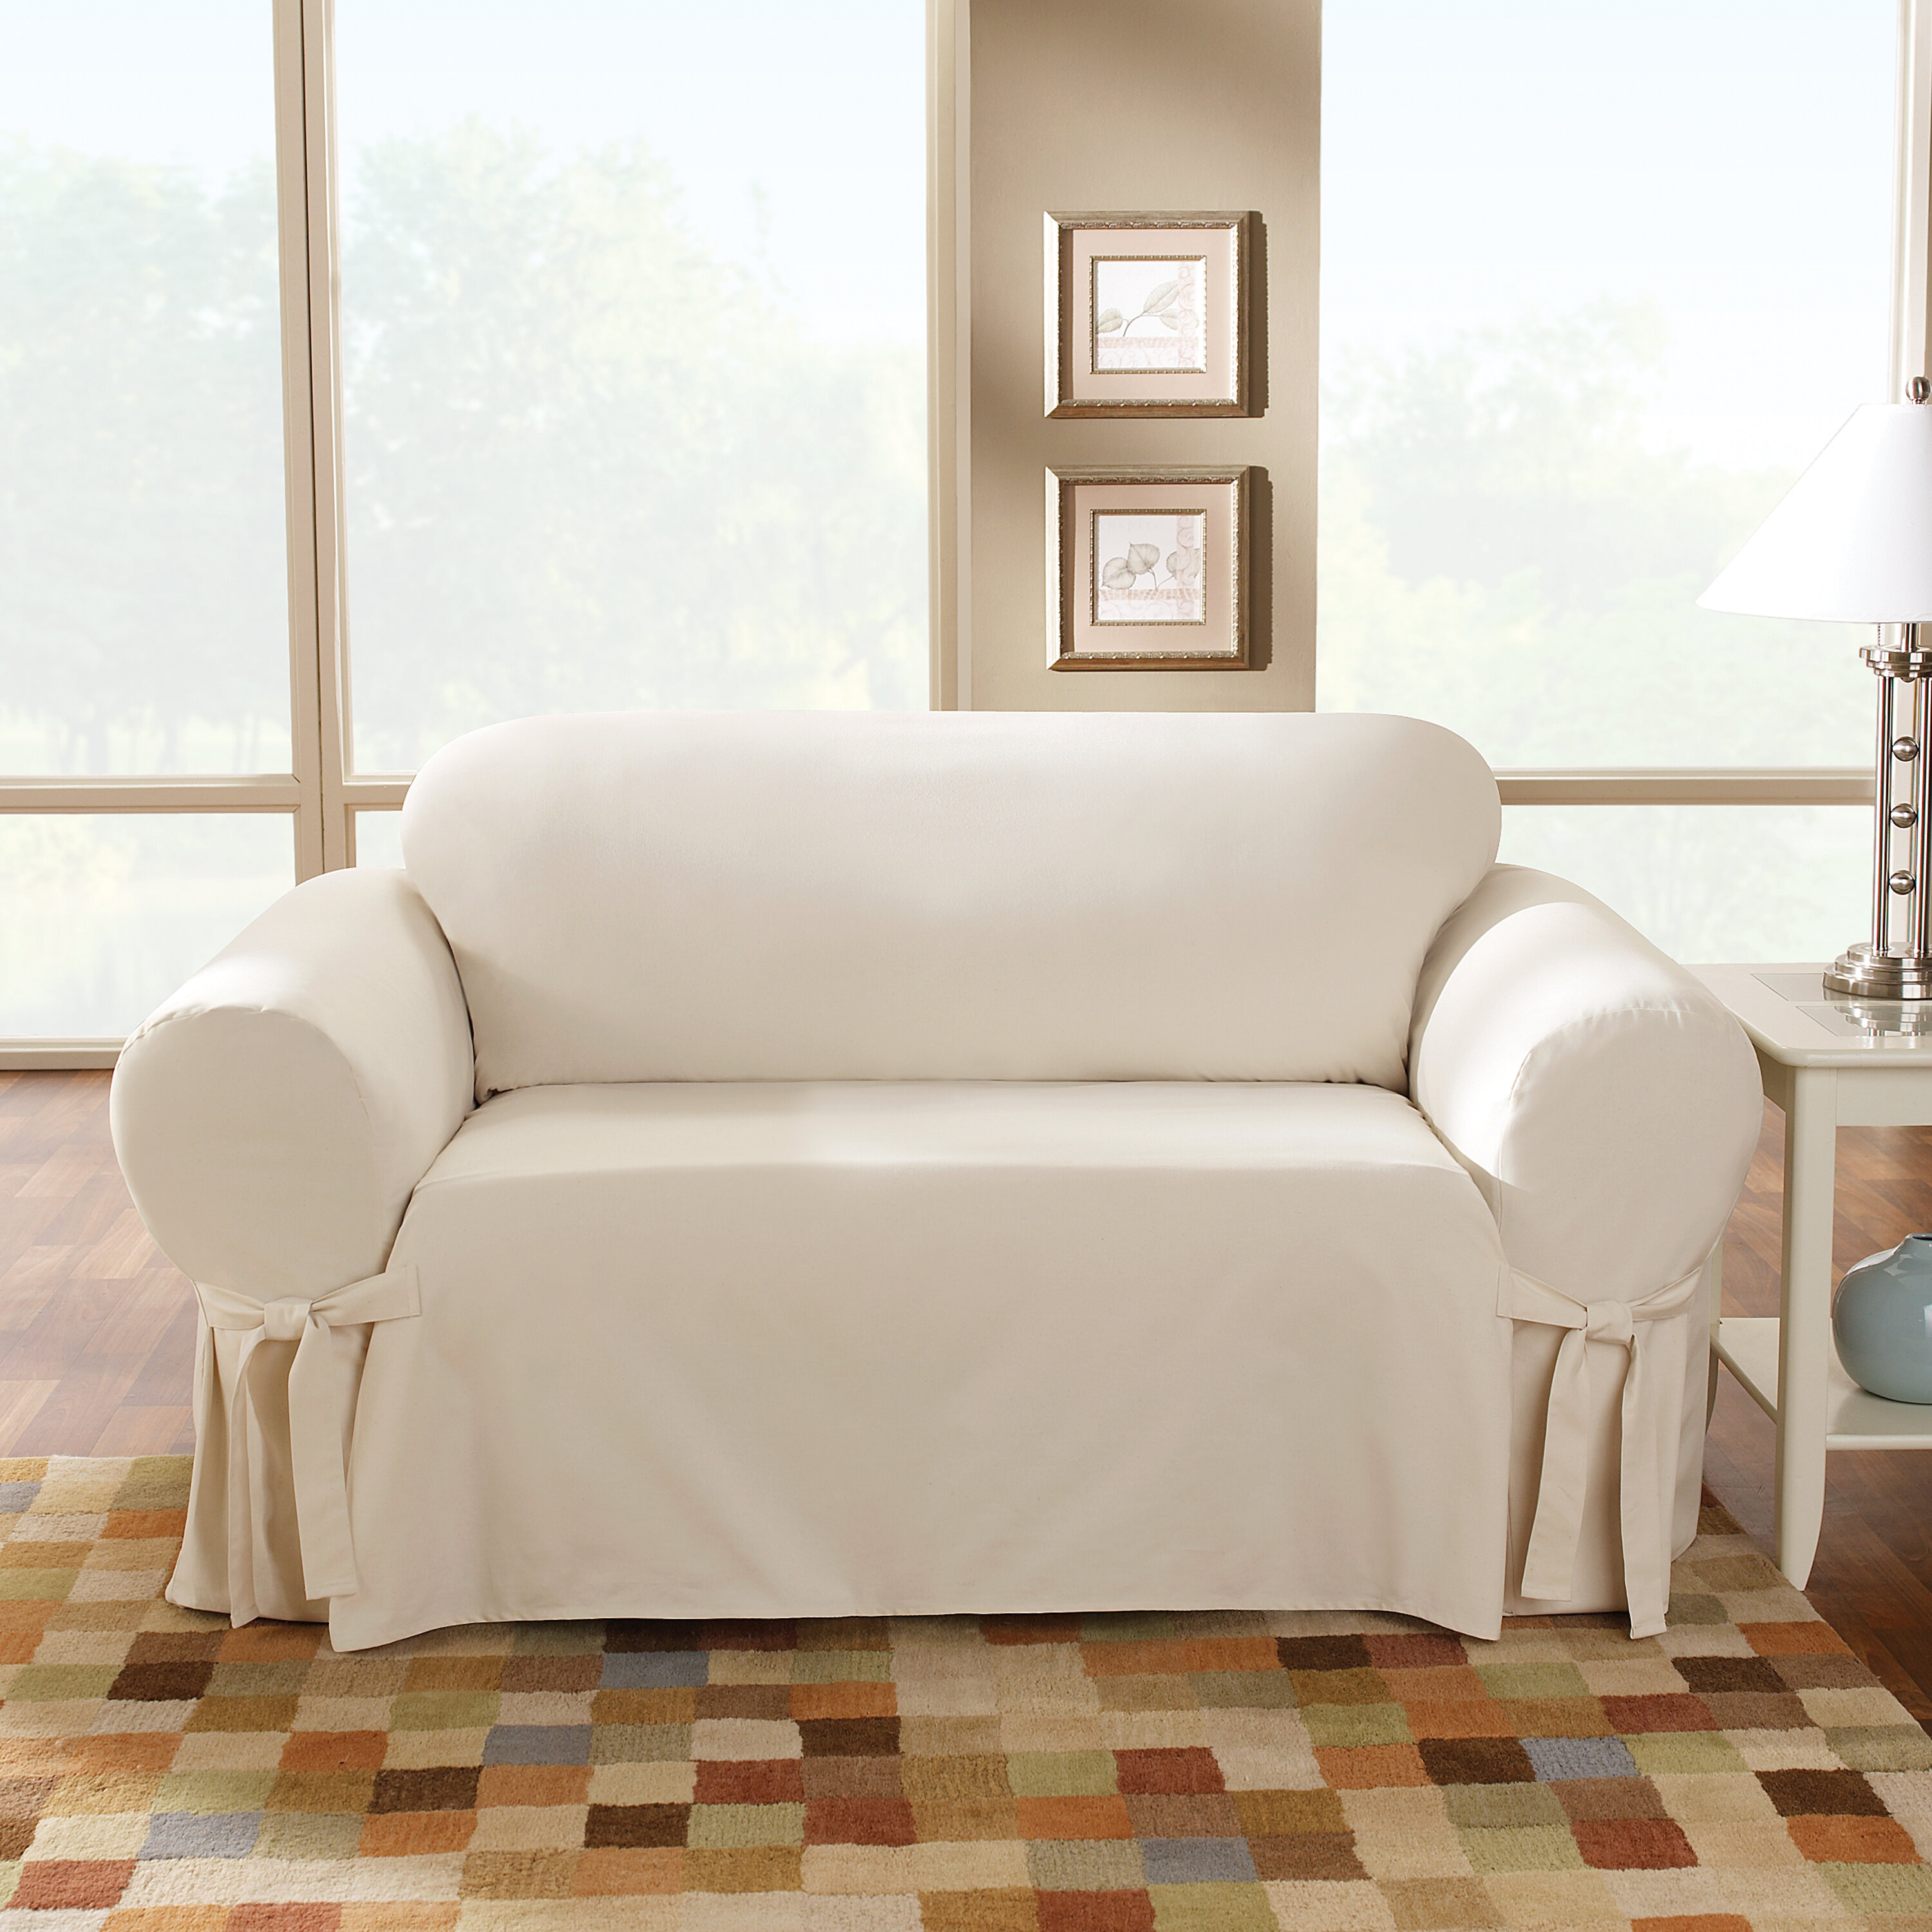 https://assets.wfcdn.com/im/37556801/compr-r85/2784/27849052/100-cotton-box-cushion-sofa-slipcover.jpg